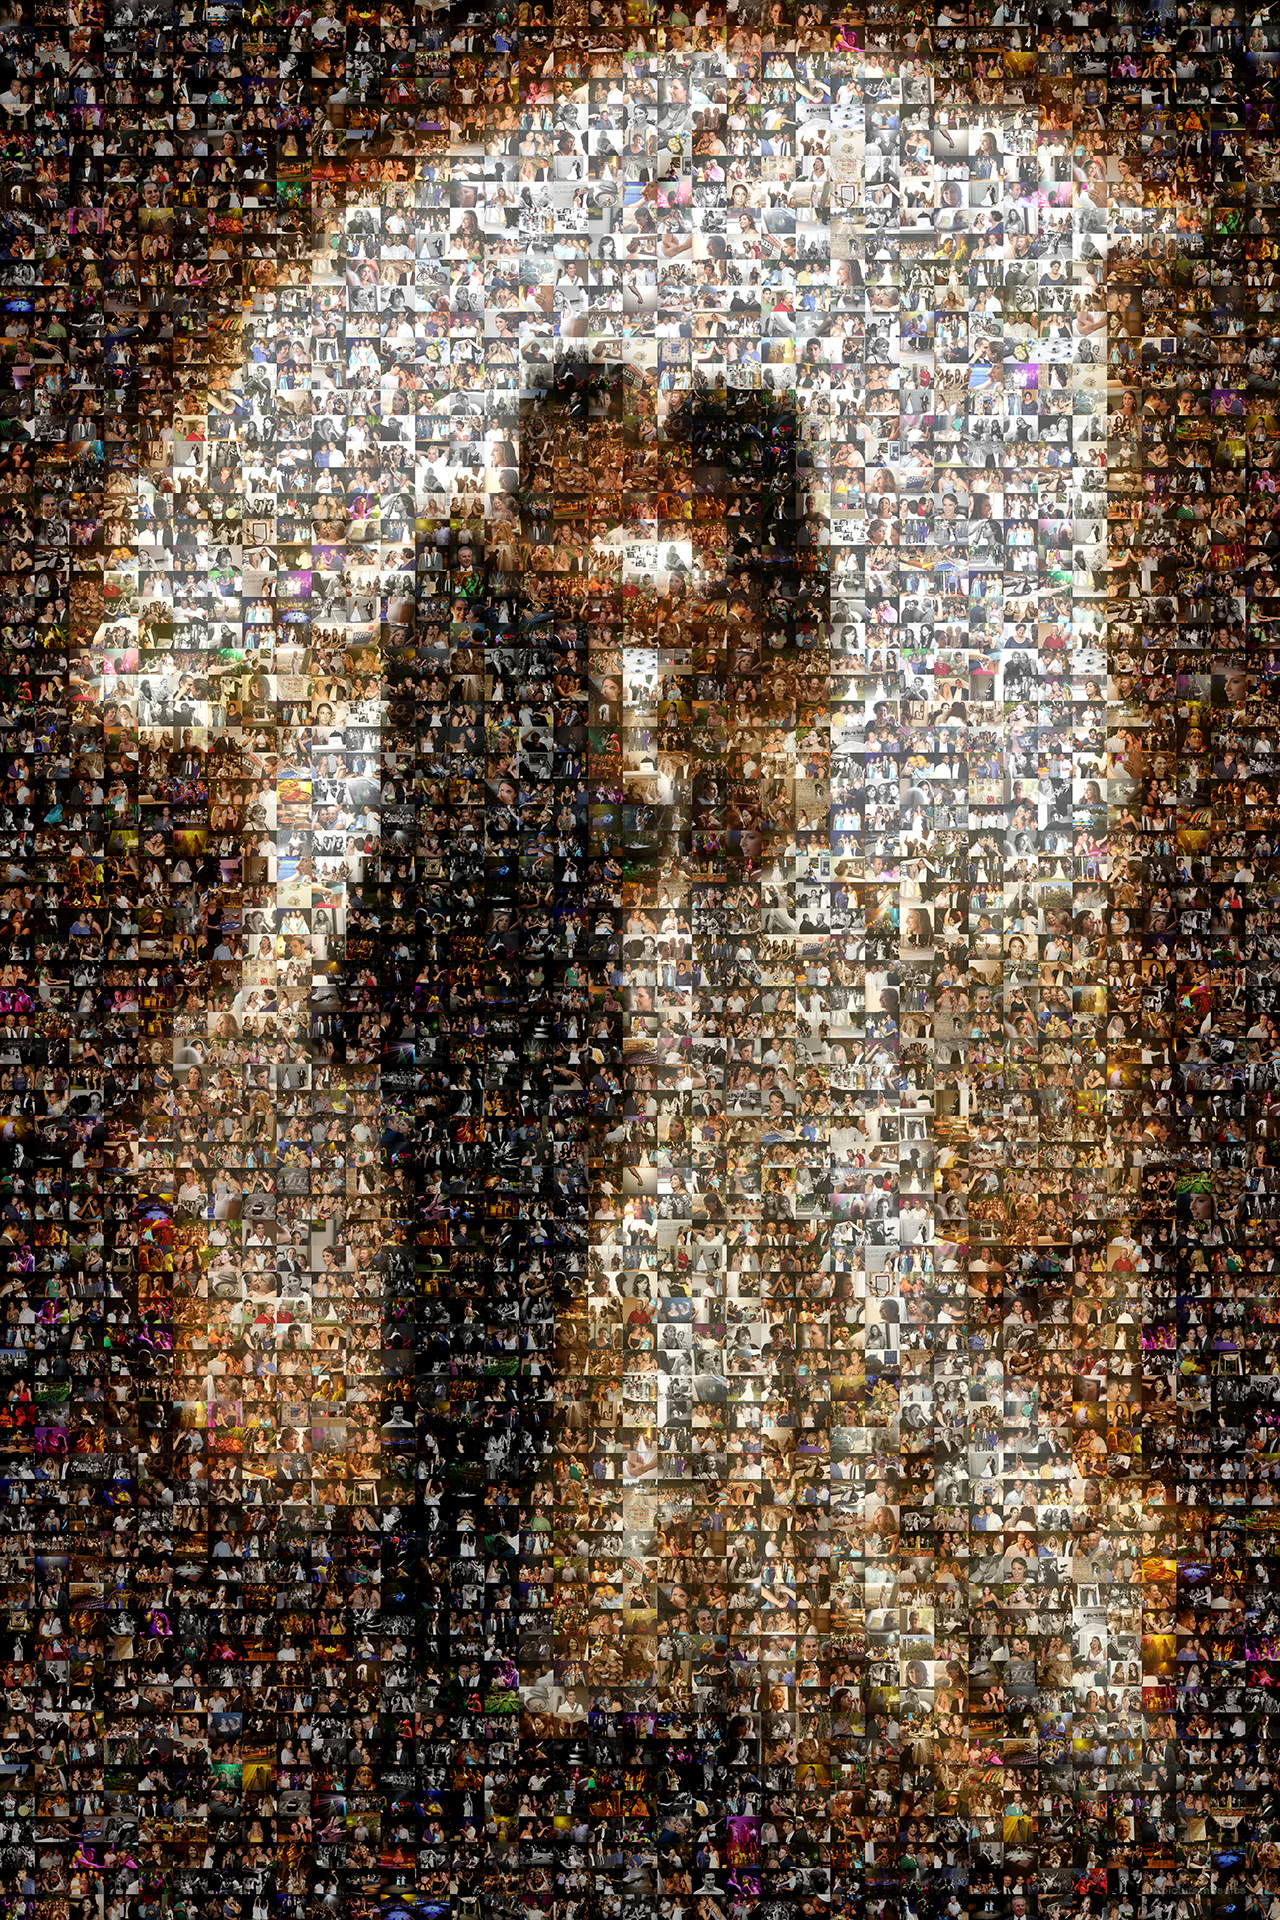 photo mosaic created using 1,134 wedding photos